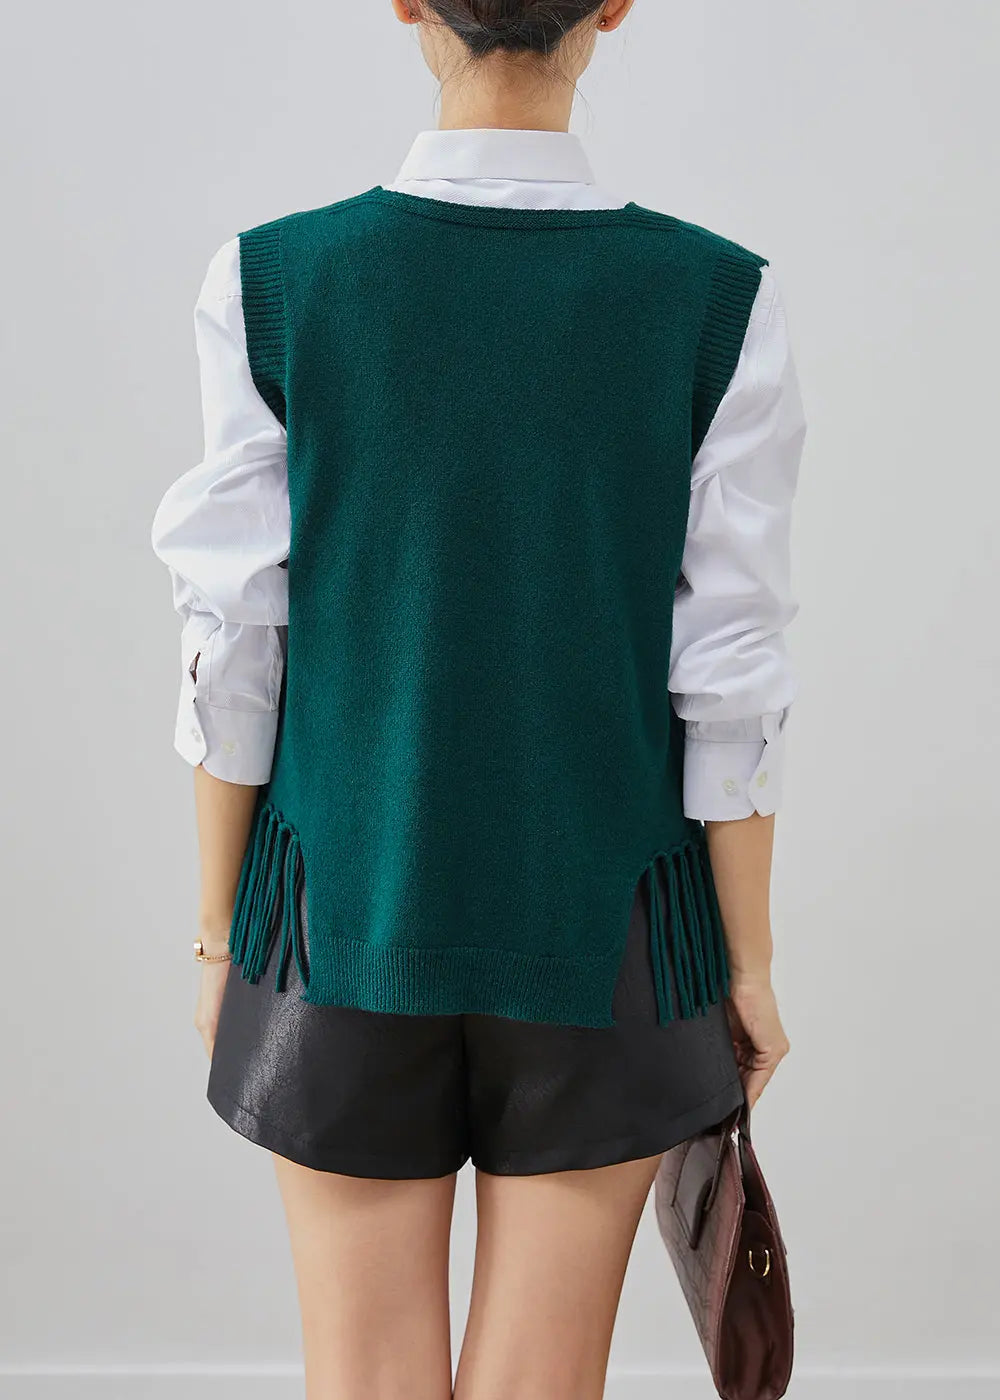 Blackish Green Knit Vest Tops Tasseled Fall Ada Fashion